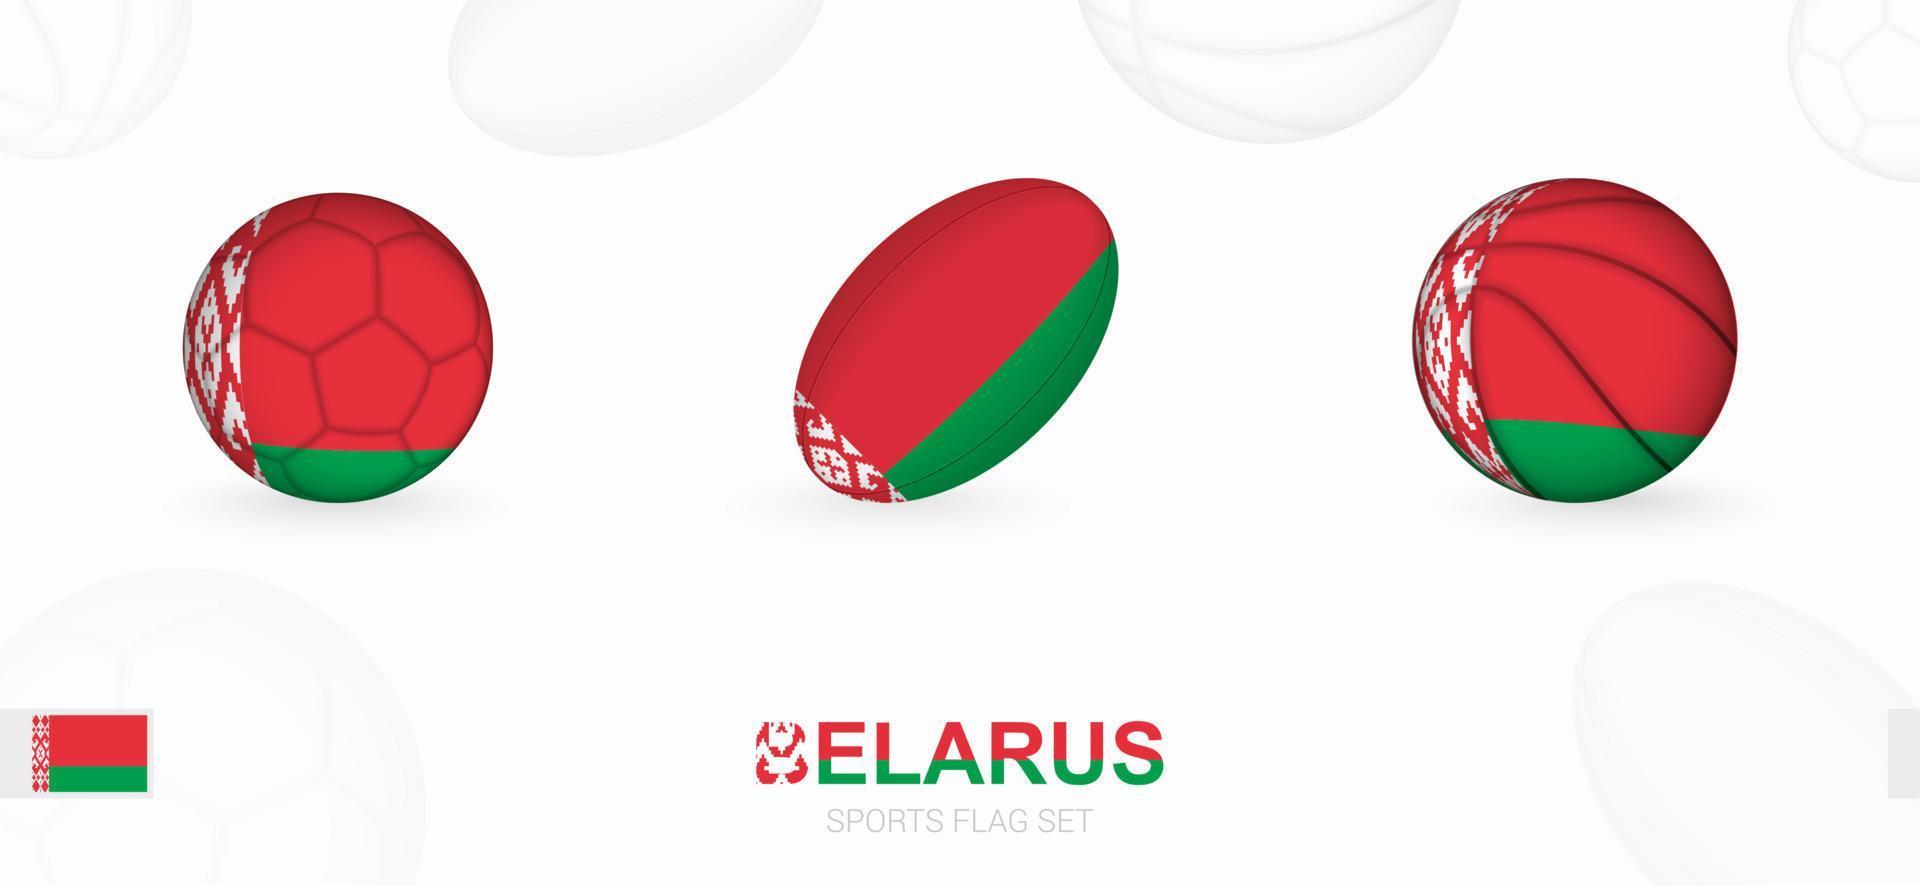 sporter ikoner för fotboll, rugby och basketboll med de flagga av belarus. vektor